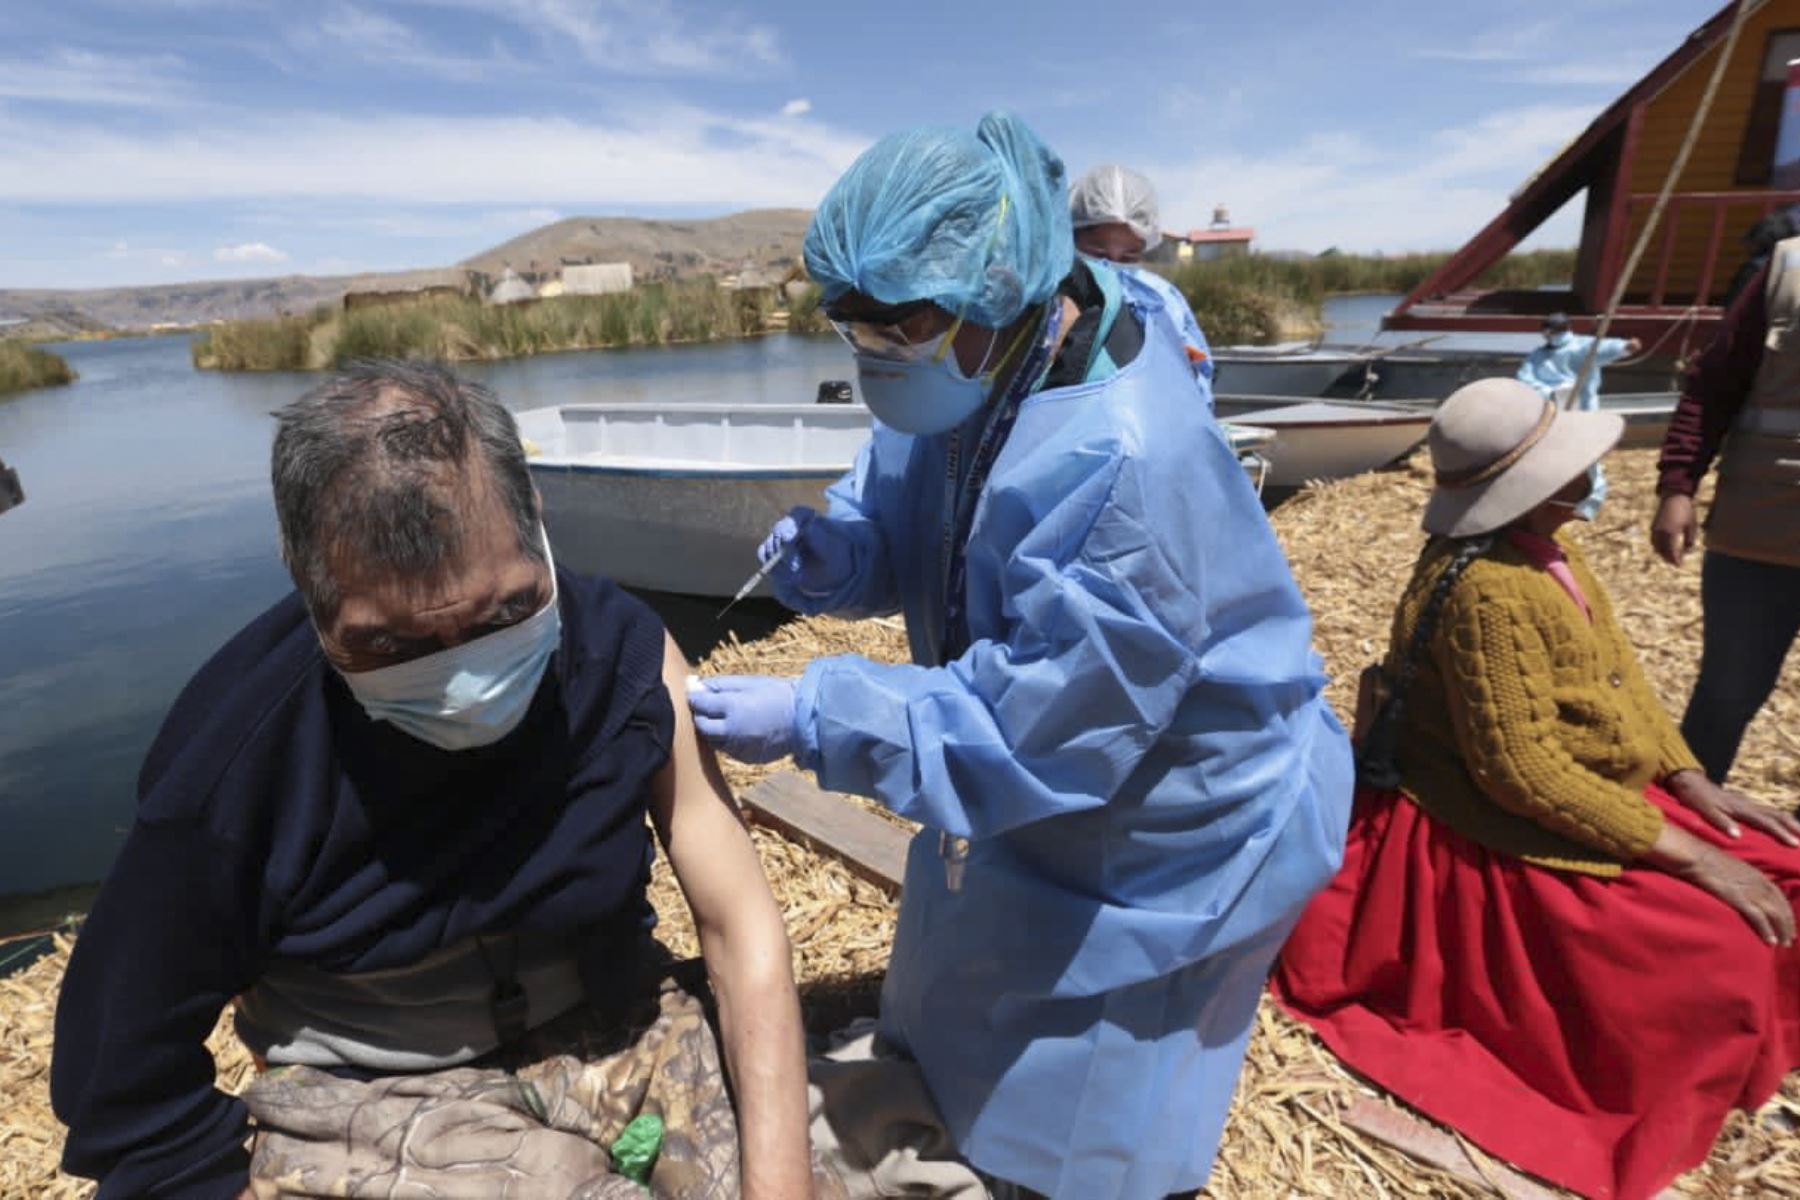 Brigadas de la Red de Salud Puno del Minsa, vacunan contra la covid-19 a las pobladores de las islas flotantes de Los Uros, ubicados en el Lago Titicaca (Puno) como parte de la estrategia “Vamos a tu encuentro, vacúnate ya”. Dicha estrategia permite llegar a las comunidades más alejadas asi como cerrar brechas. Foto: Minsa